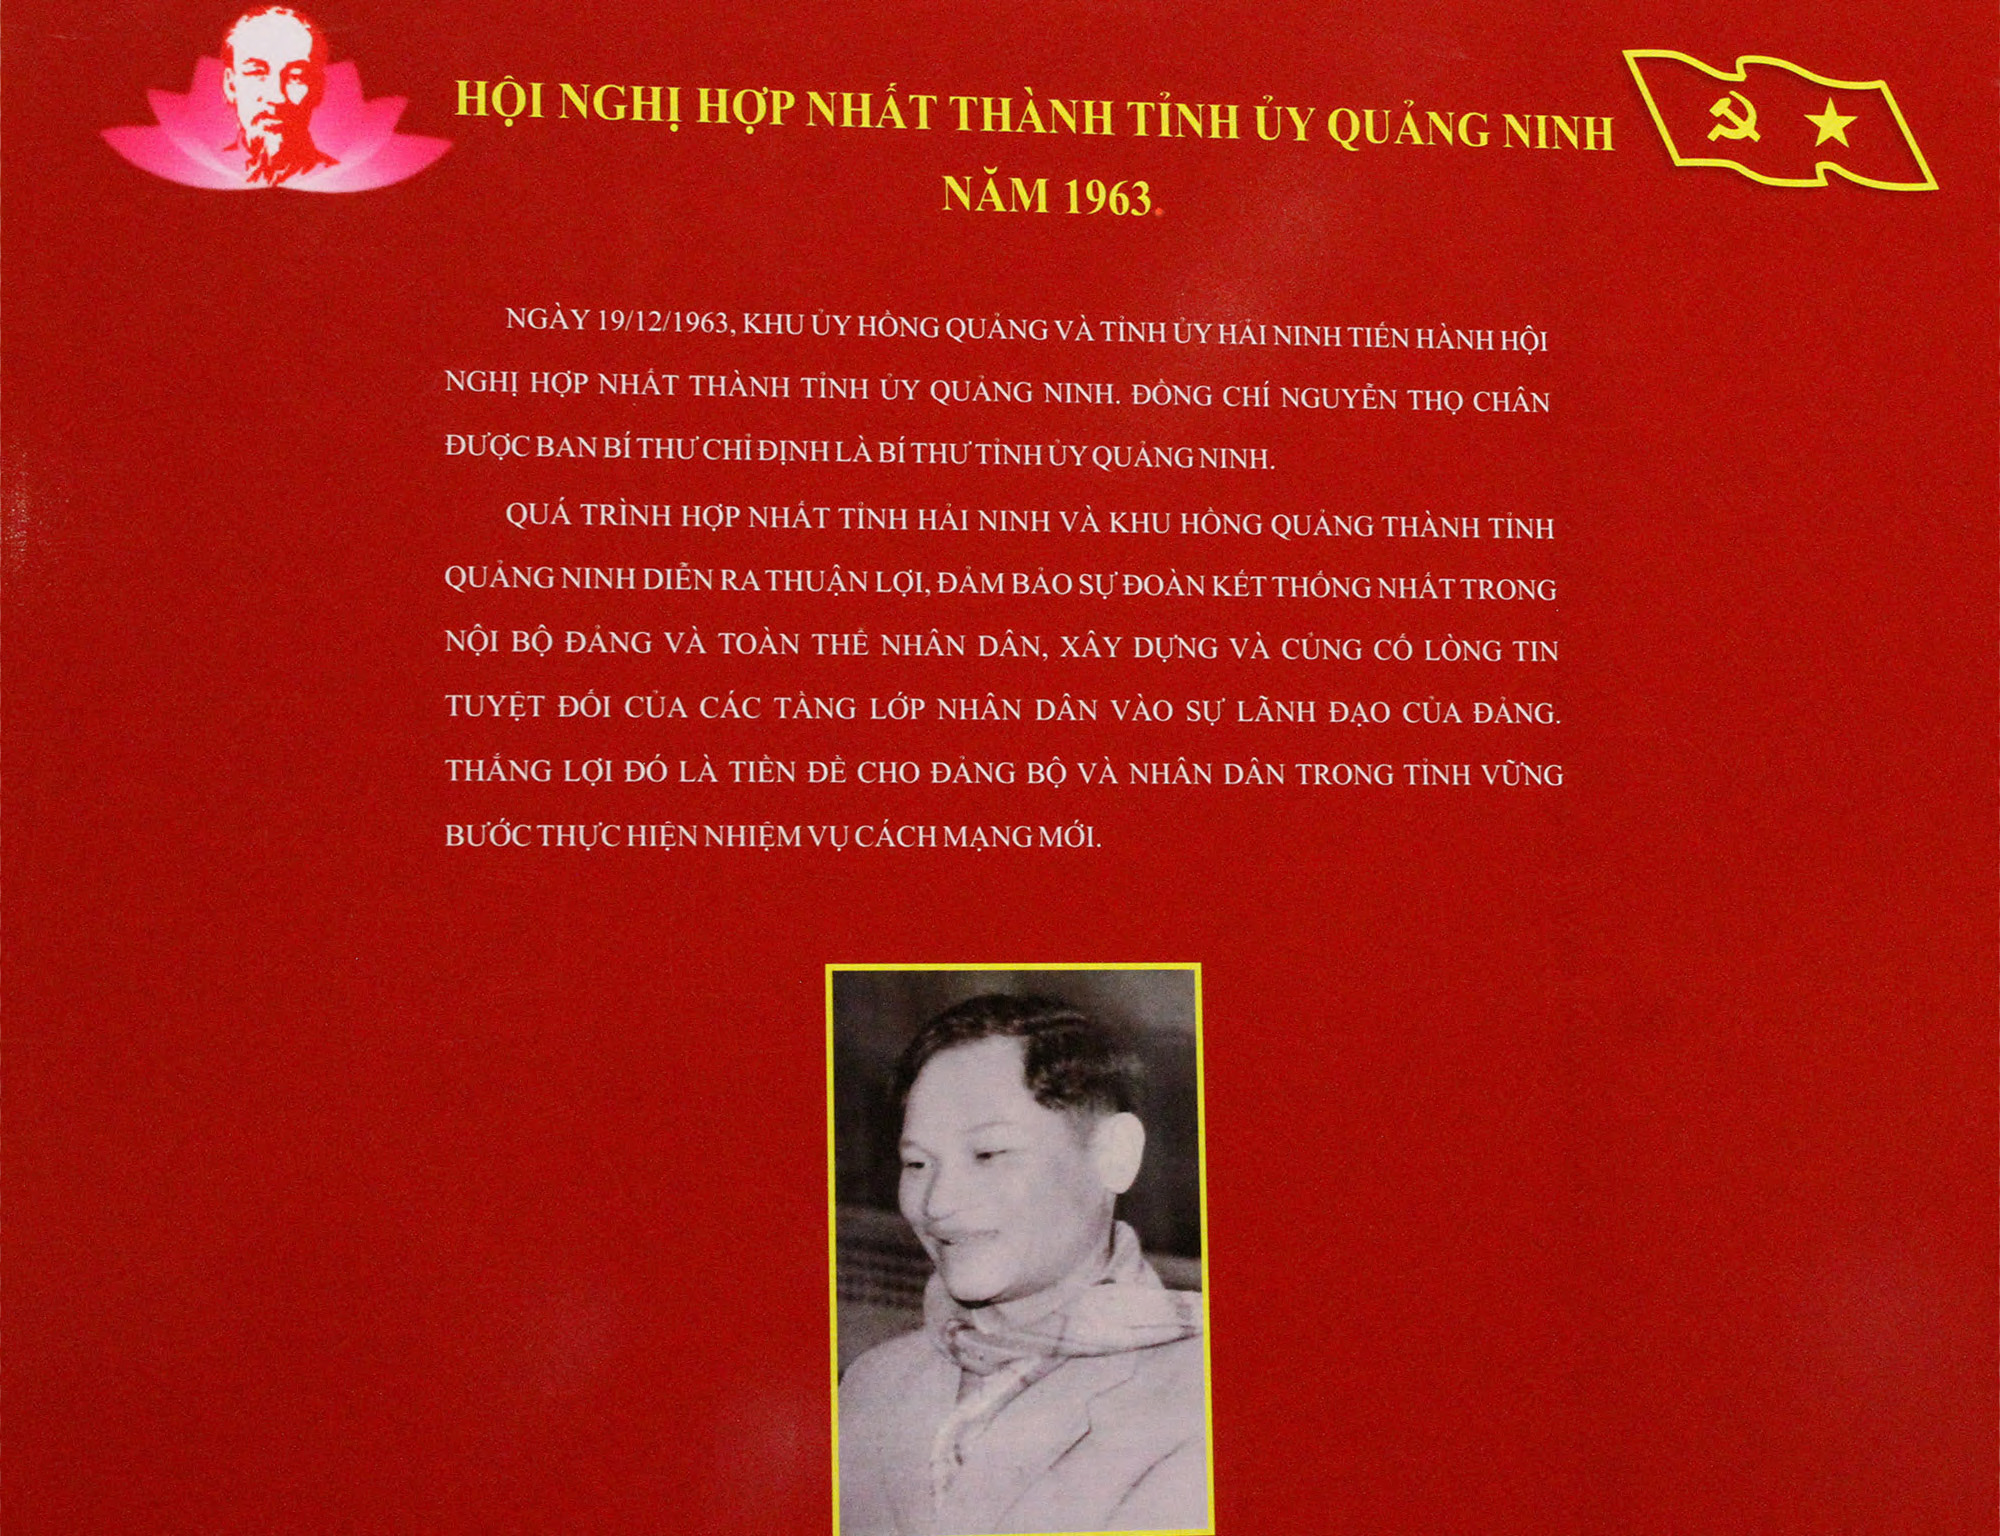 Phần giới thiệu về hội nghị hợp nhất Tỉnh ủy Quảng Ninh và Bí thư Tỉnh ủy đầu tiên.